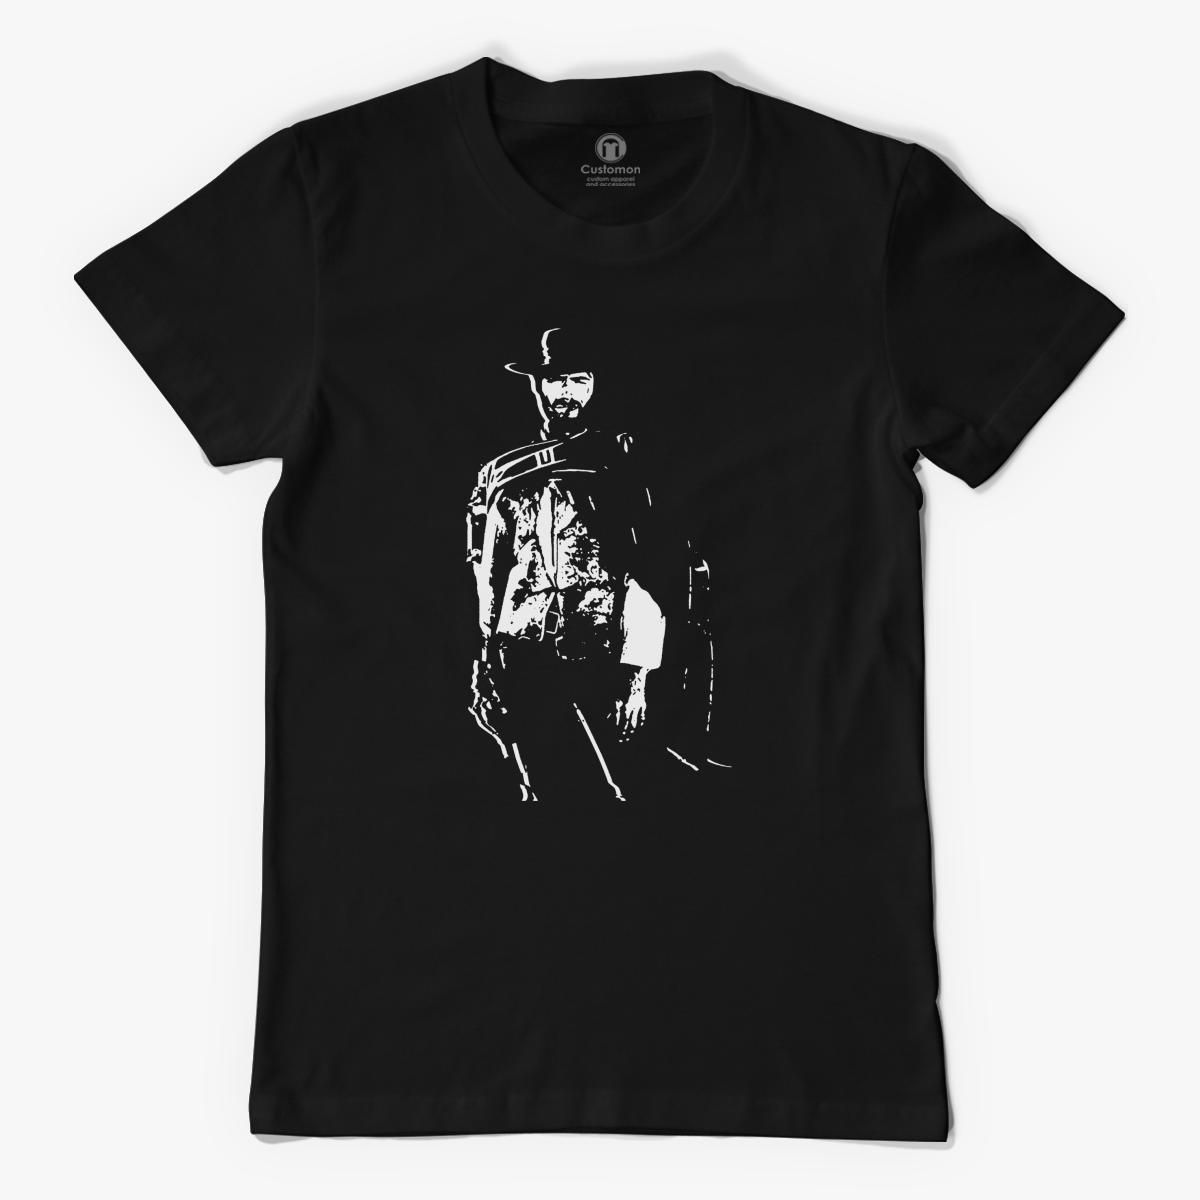 Clint Eastwood Mens T Shirt Customon